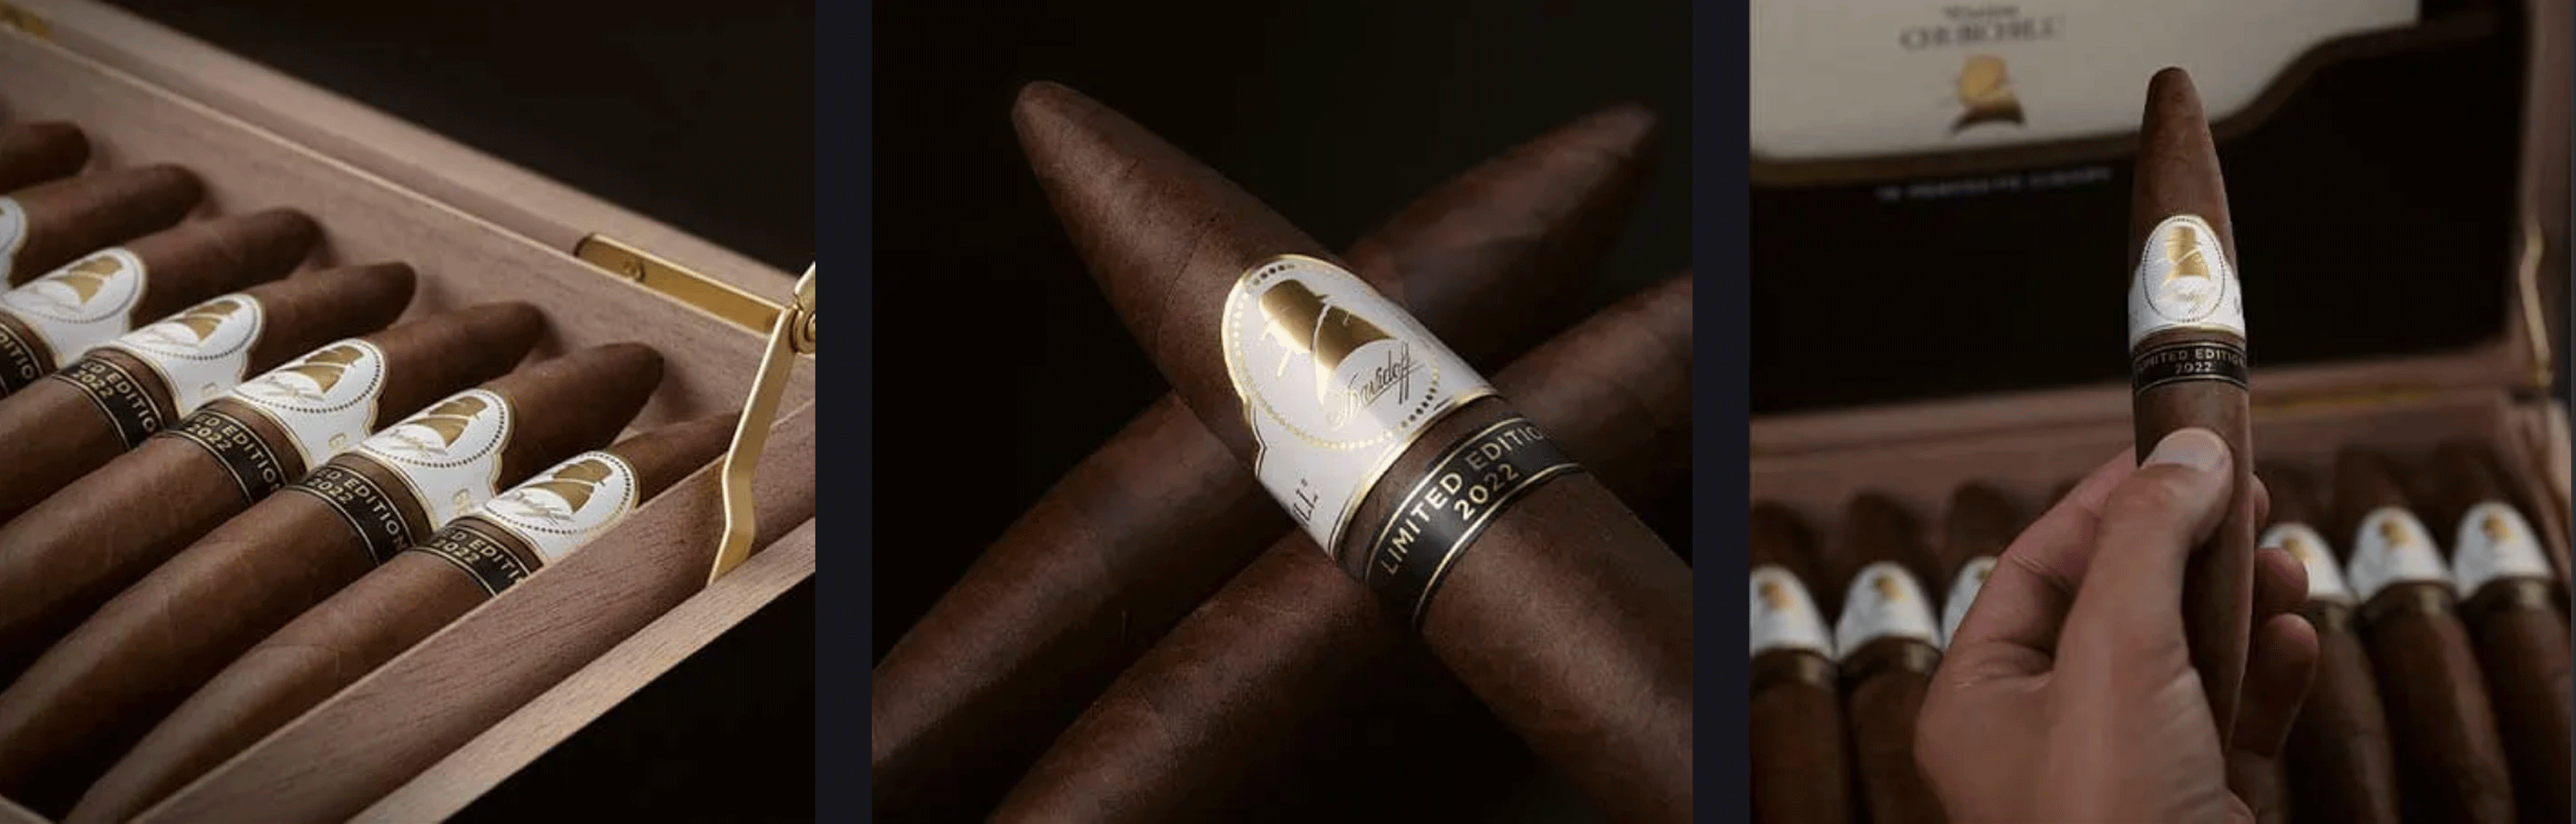 Zigarrenerlebnis-2-1